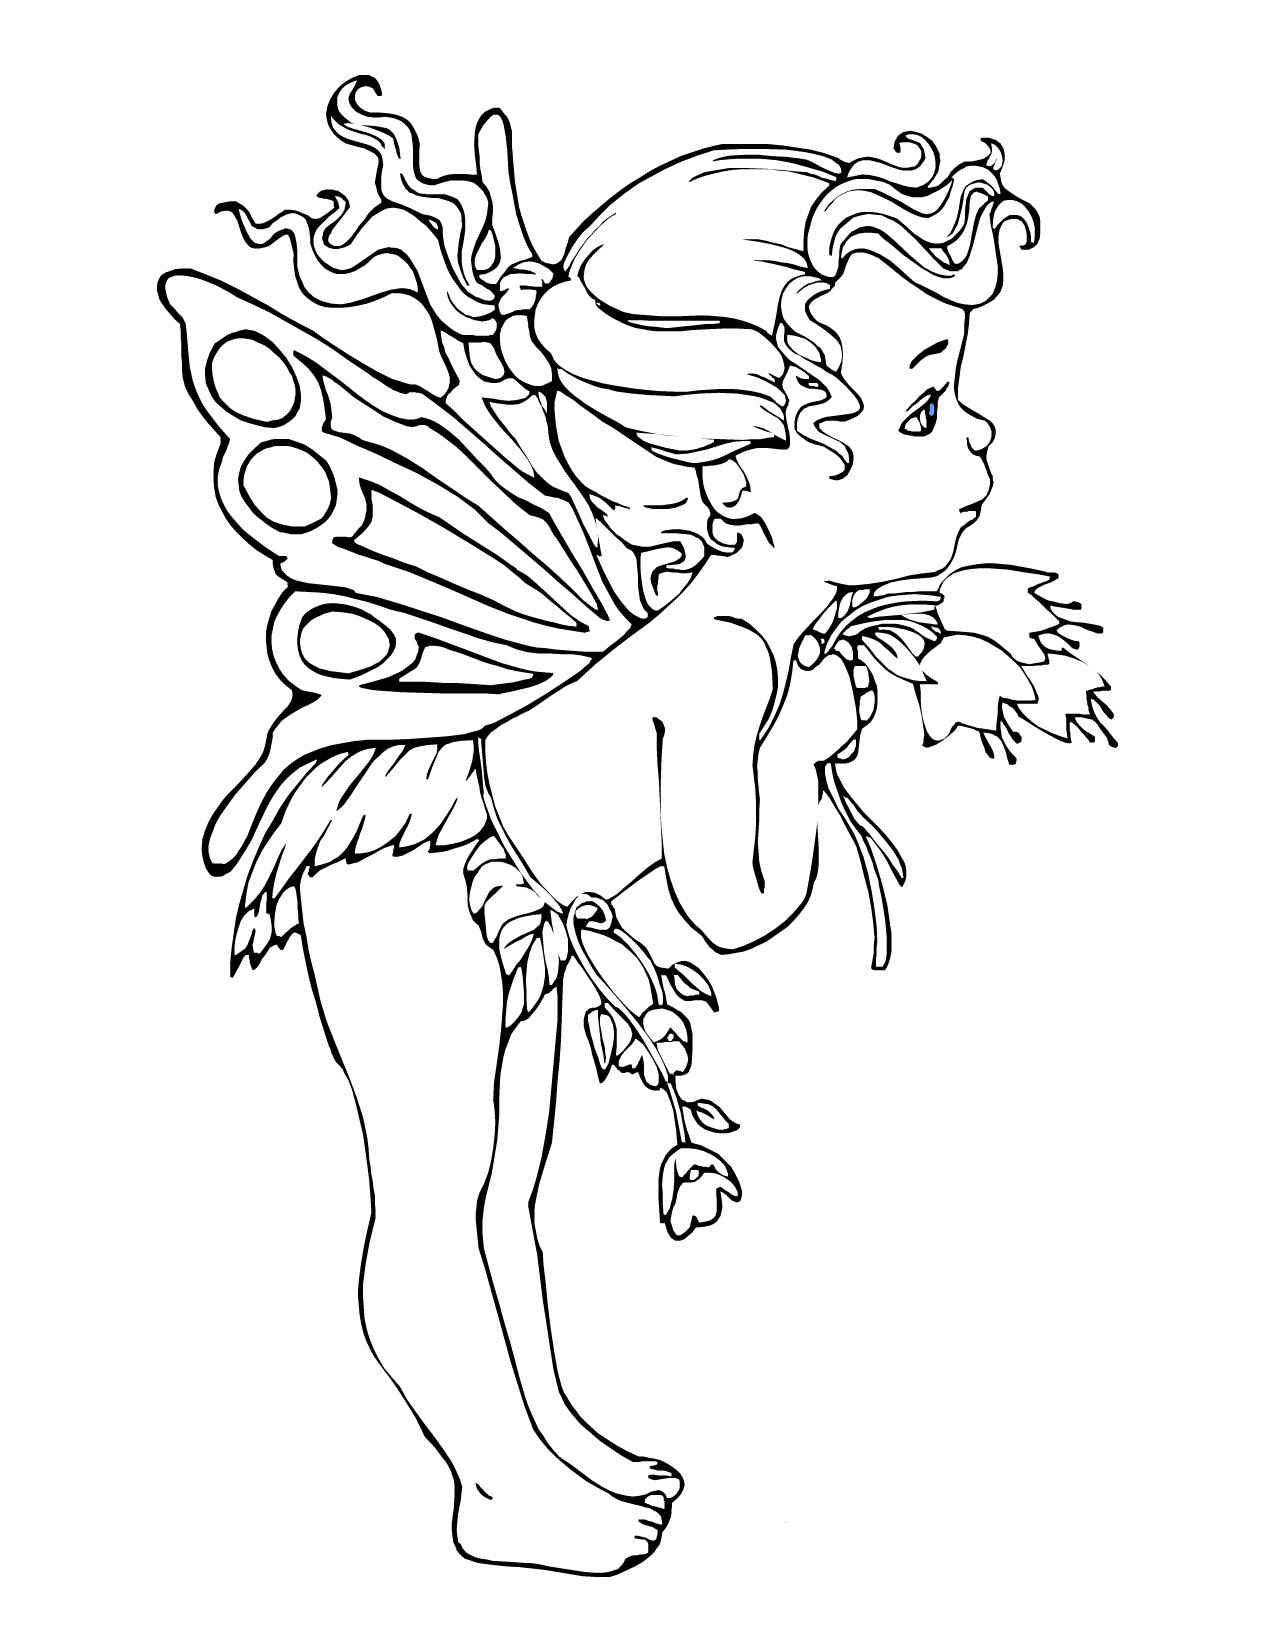 cute baby fairies drawings